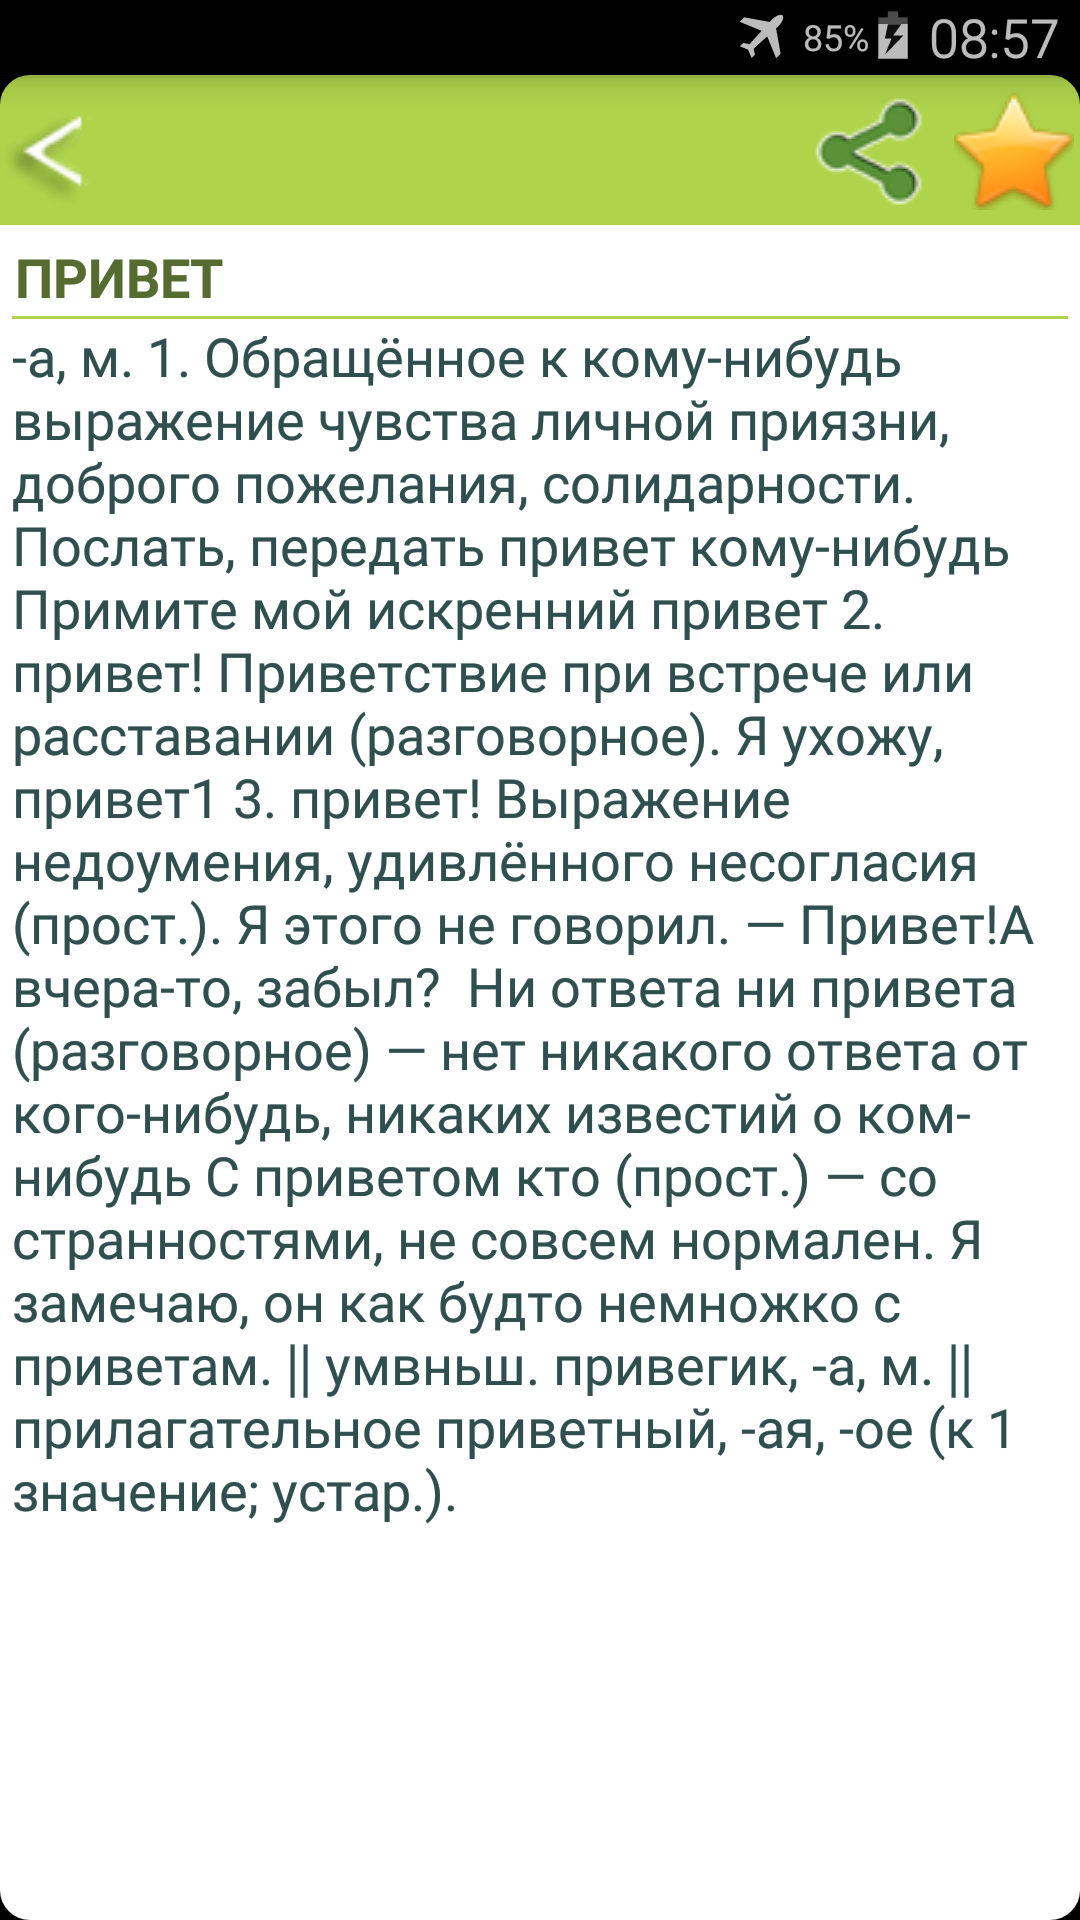 Android application Русский толковый словарь screenshort